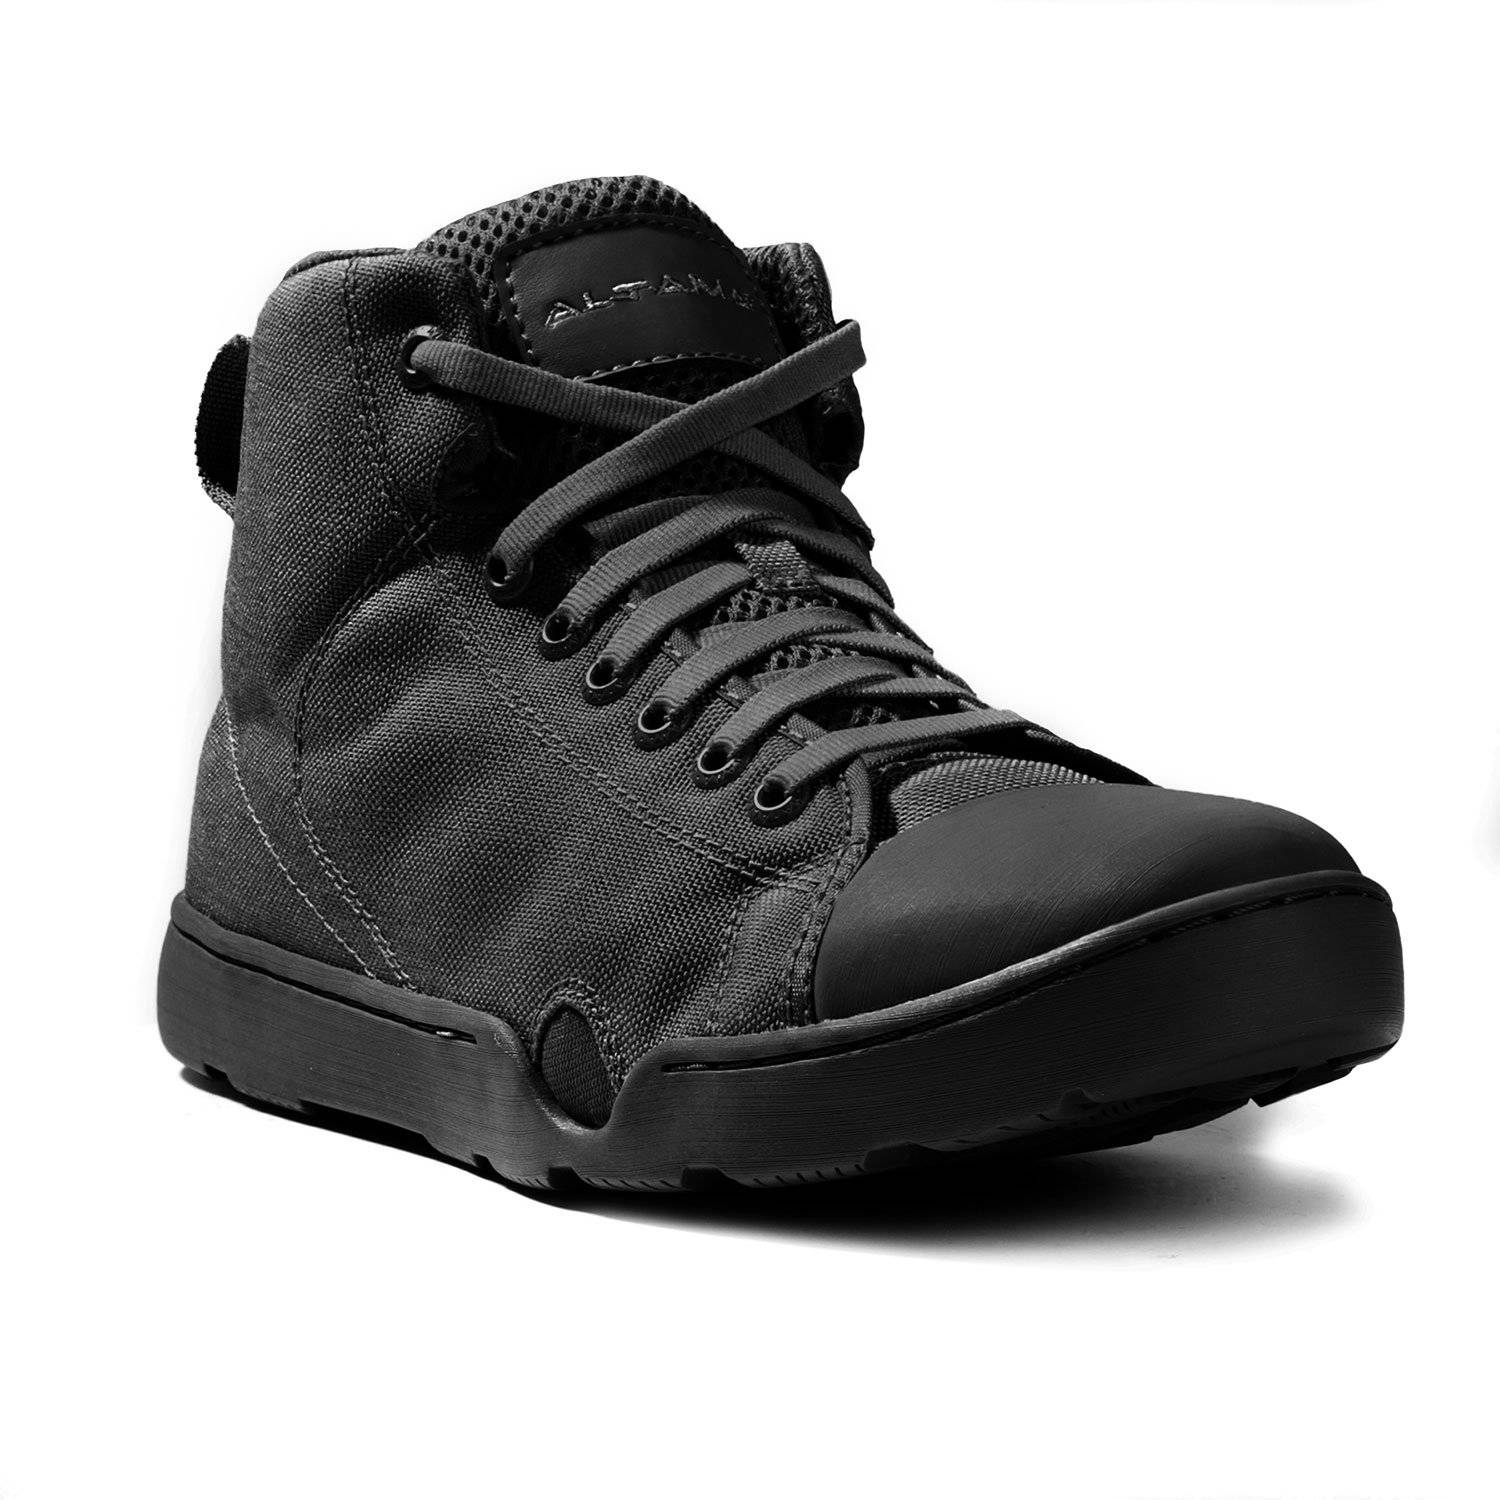 altama combat shoes